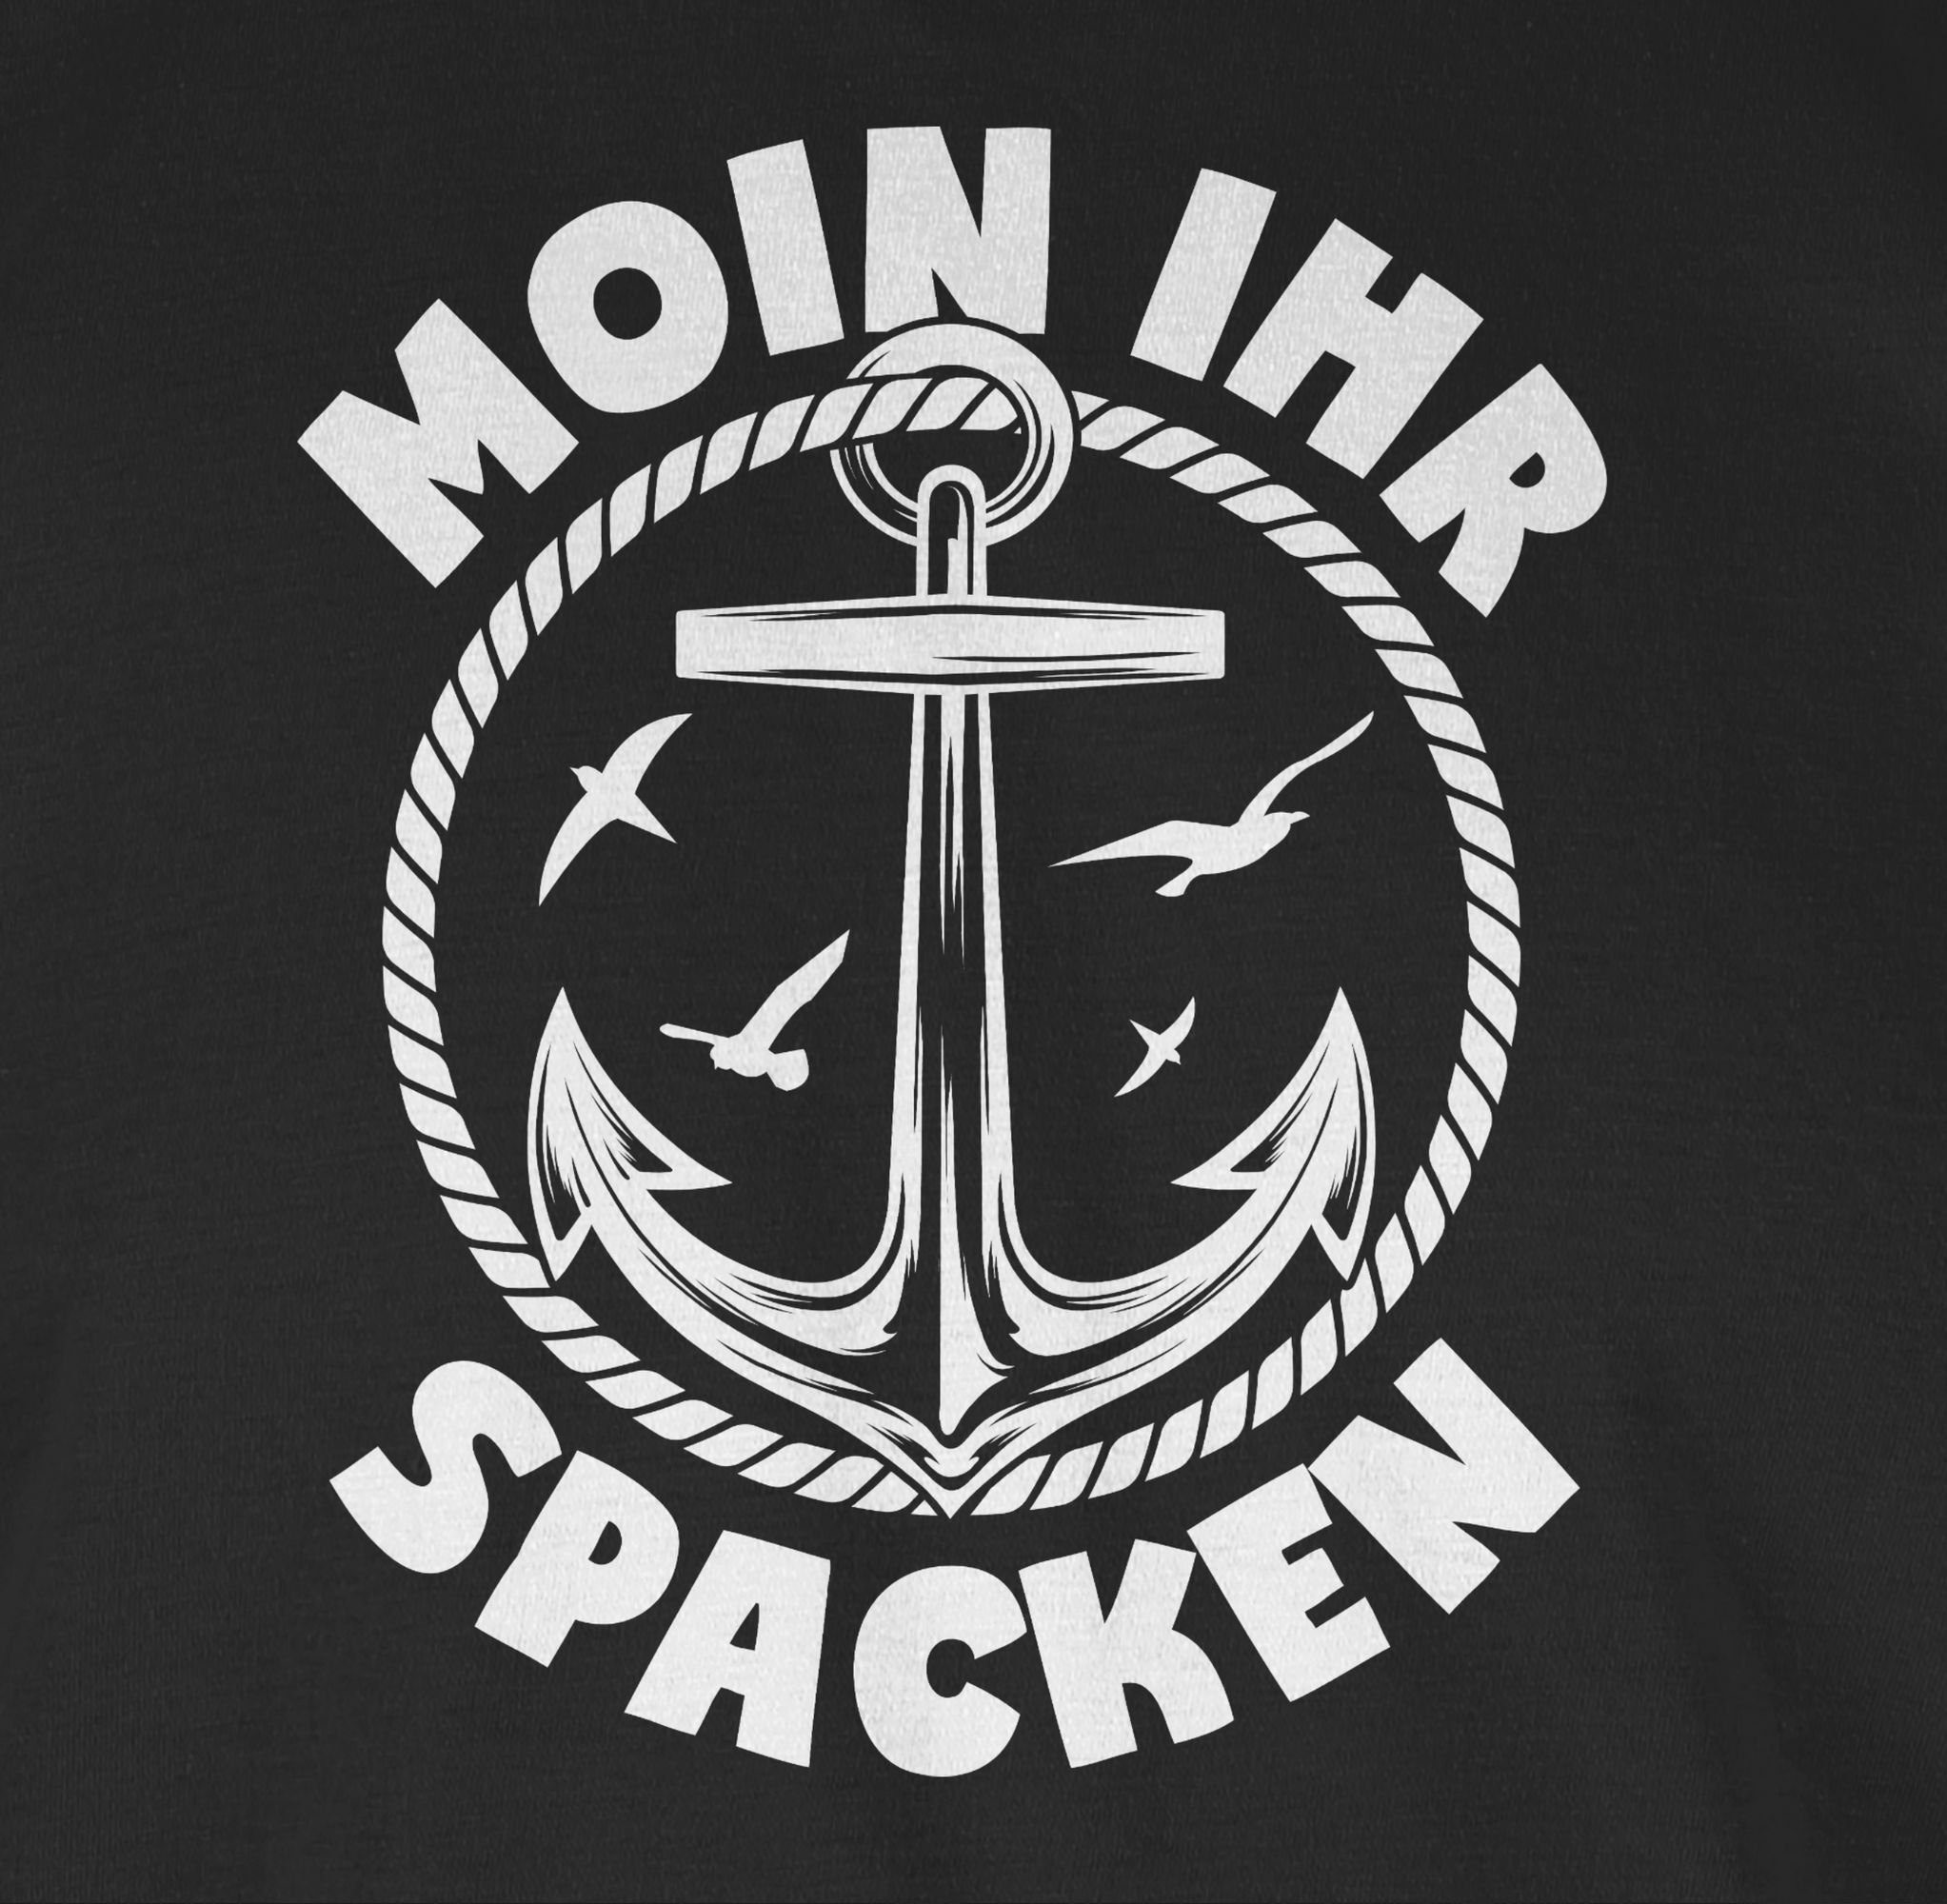 Anker Sprüche Moin Shirtracer mit 03 ihr Statement mit weiß Spruch Spacken - Schwarz T-Shirt